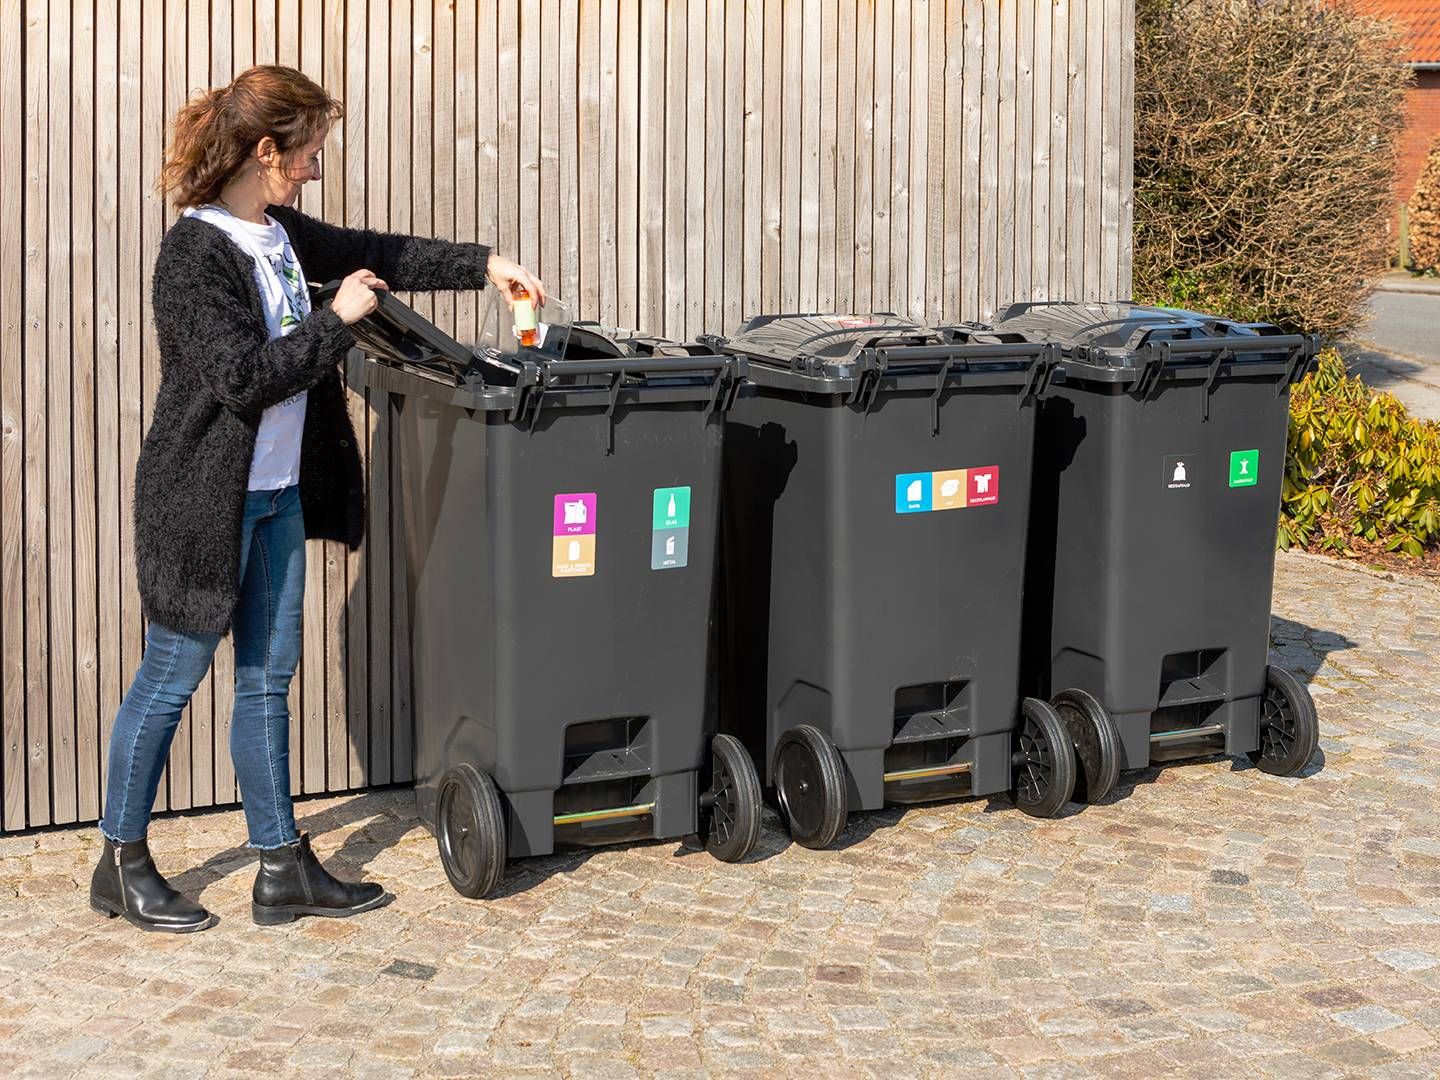 I fremtiden kan det være en realitet, at disse skraldespande slet ikke er aktuelle, hvis affaldssorteringen udliciteres til robotter. | Foto: Kredsløb/pr